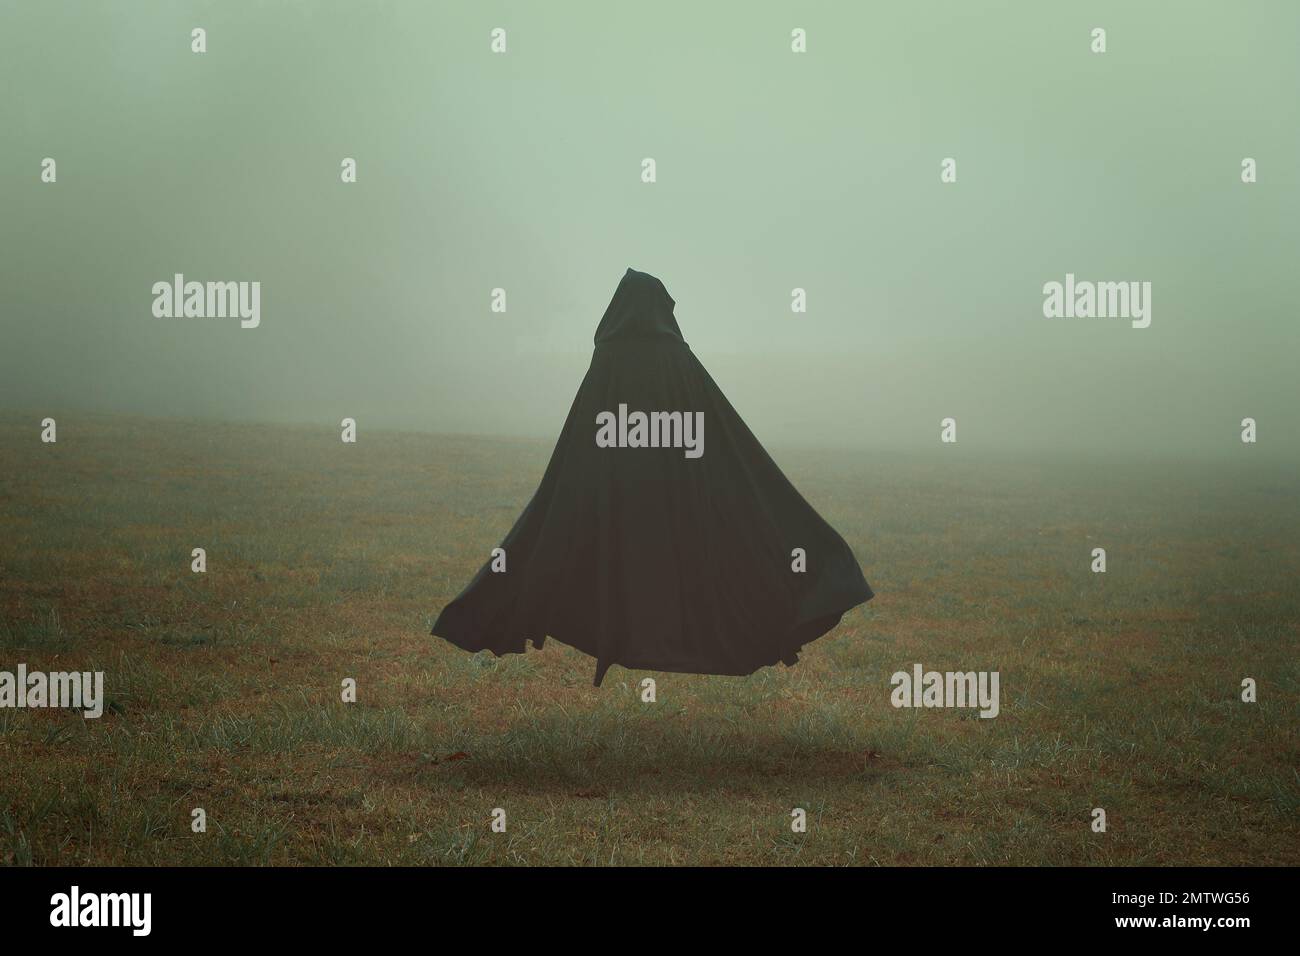 Black cloak in a desolate field Stock Photo